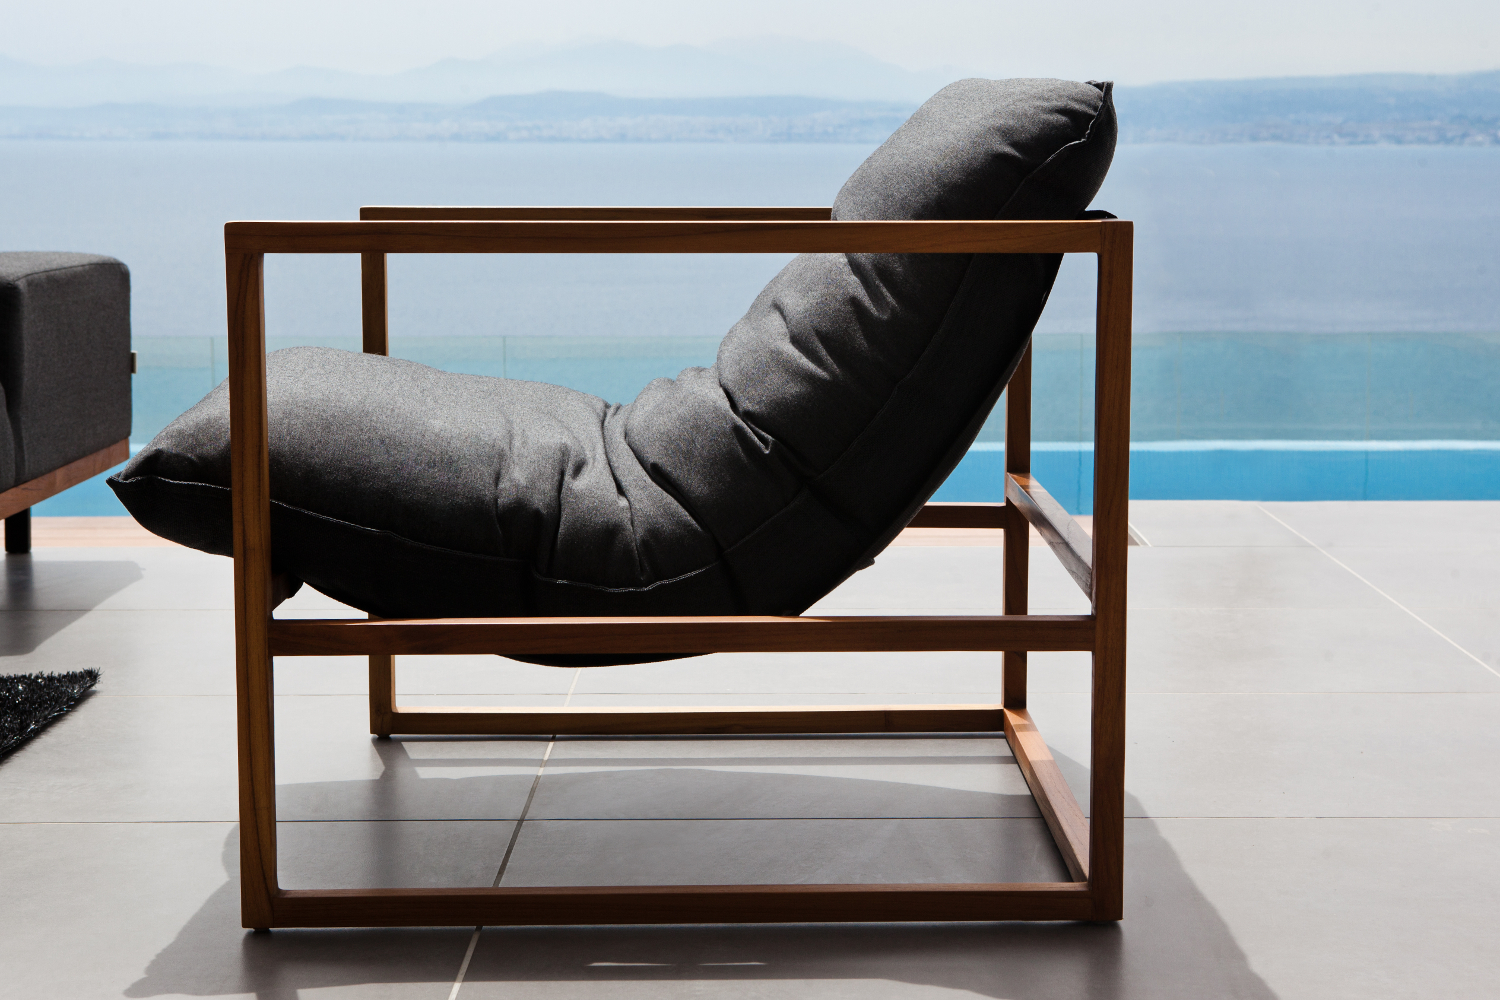 Premium Garten LoungeSet Santiago - 6-teilig - Teakholz - Aluminium - mit Sunbrella Bezug